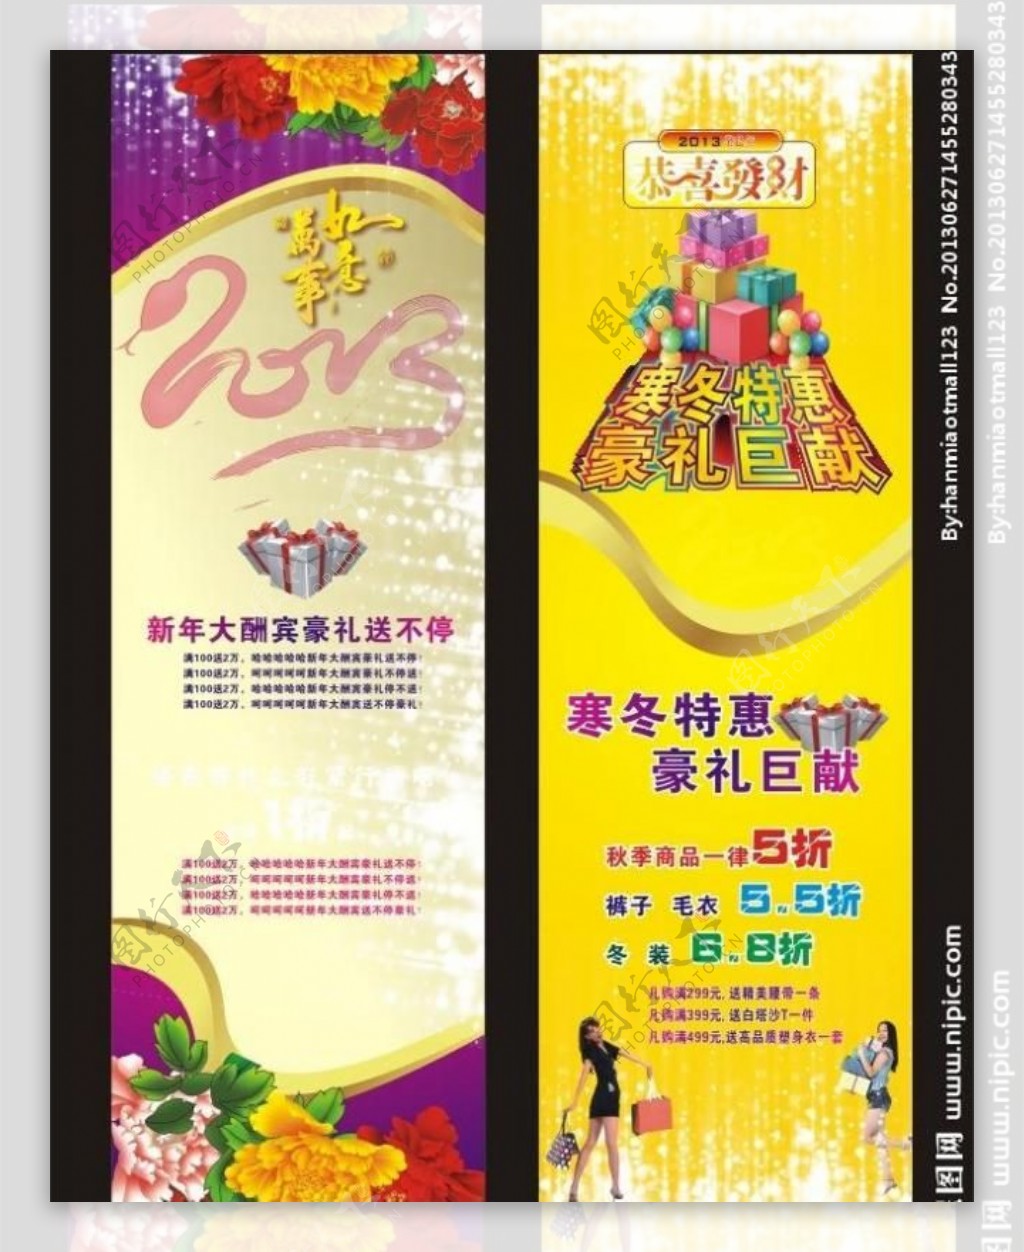 2013节春节促销图片